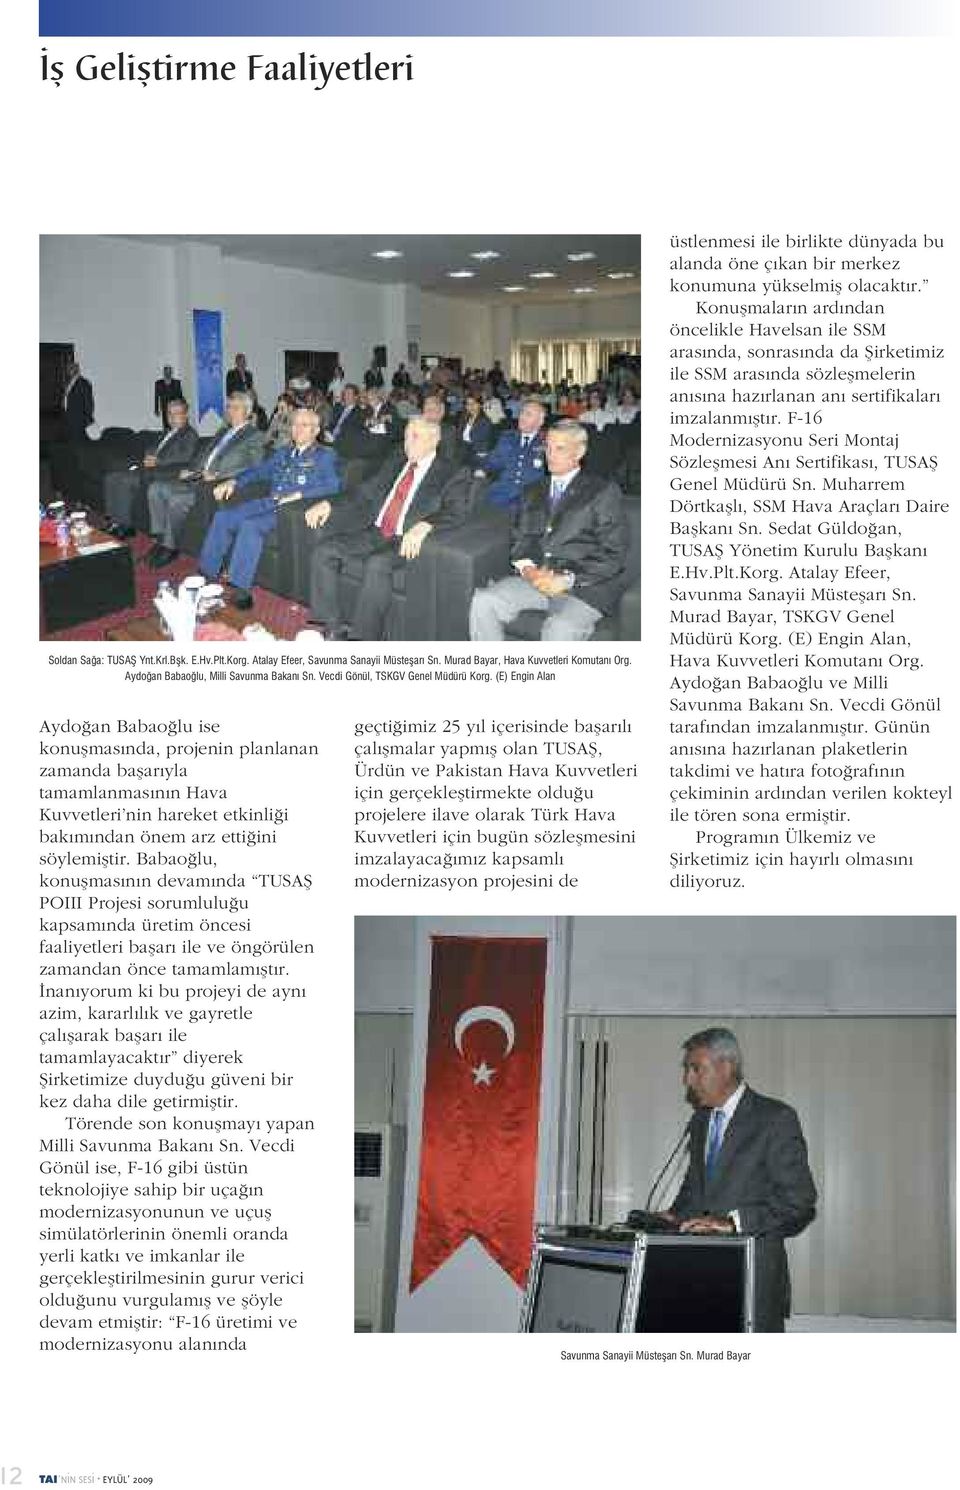 (E) Engin Alan Aydoğan Babaoğlu ise konuşmasında, projenin planlanan zamanda başarıyla tamamlanmasının Hava Kuvvetleri nin hareket etkinliği bakımından önem arz ettiğini söylemiştir.